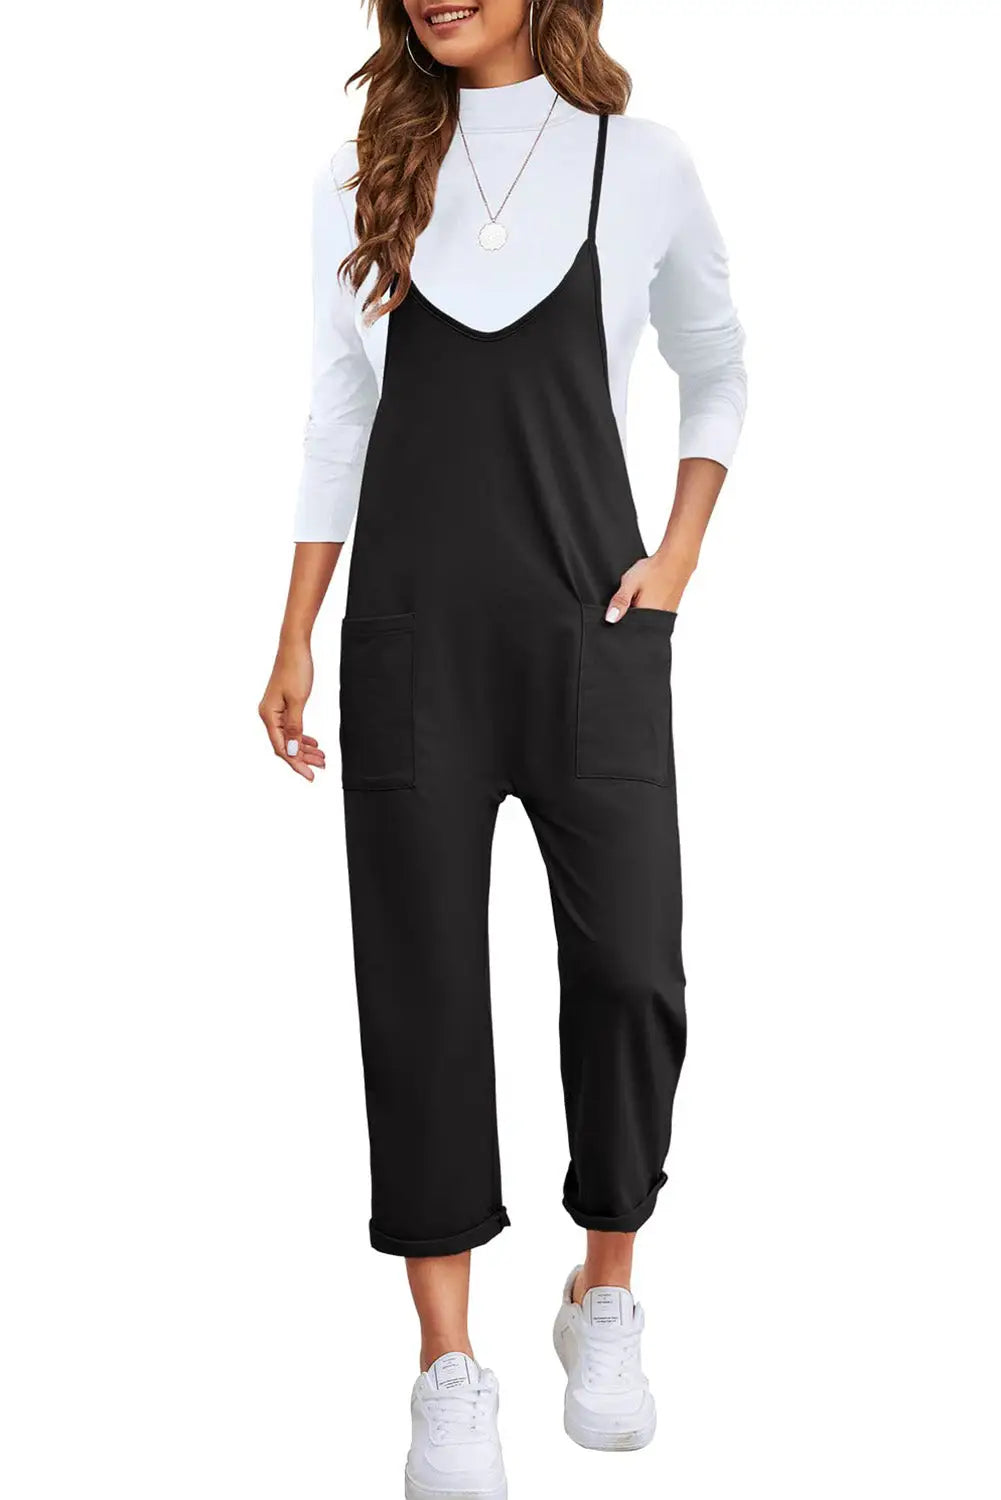 Black pocketed adjustable spaghetti strap straight leg jumpsuit - jumpsuits & rompers